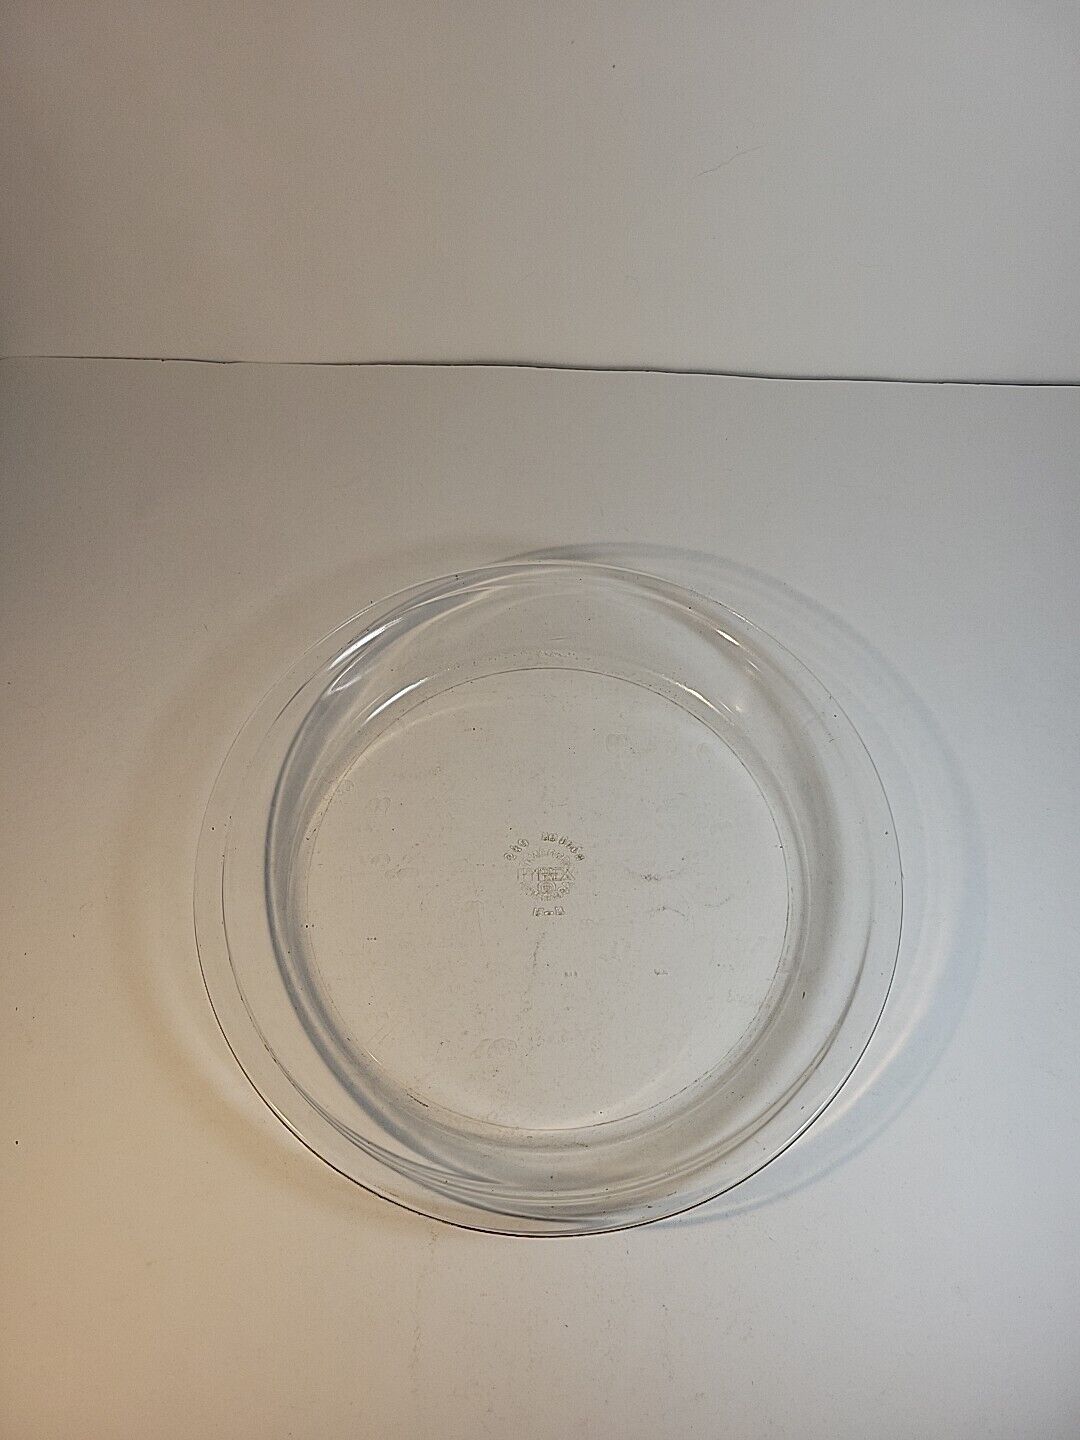 10 Inch Vintage Glass Pyrex Pie Dish Pan